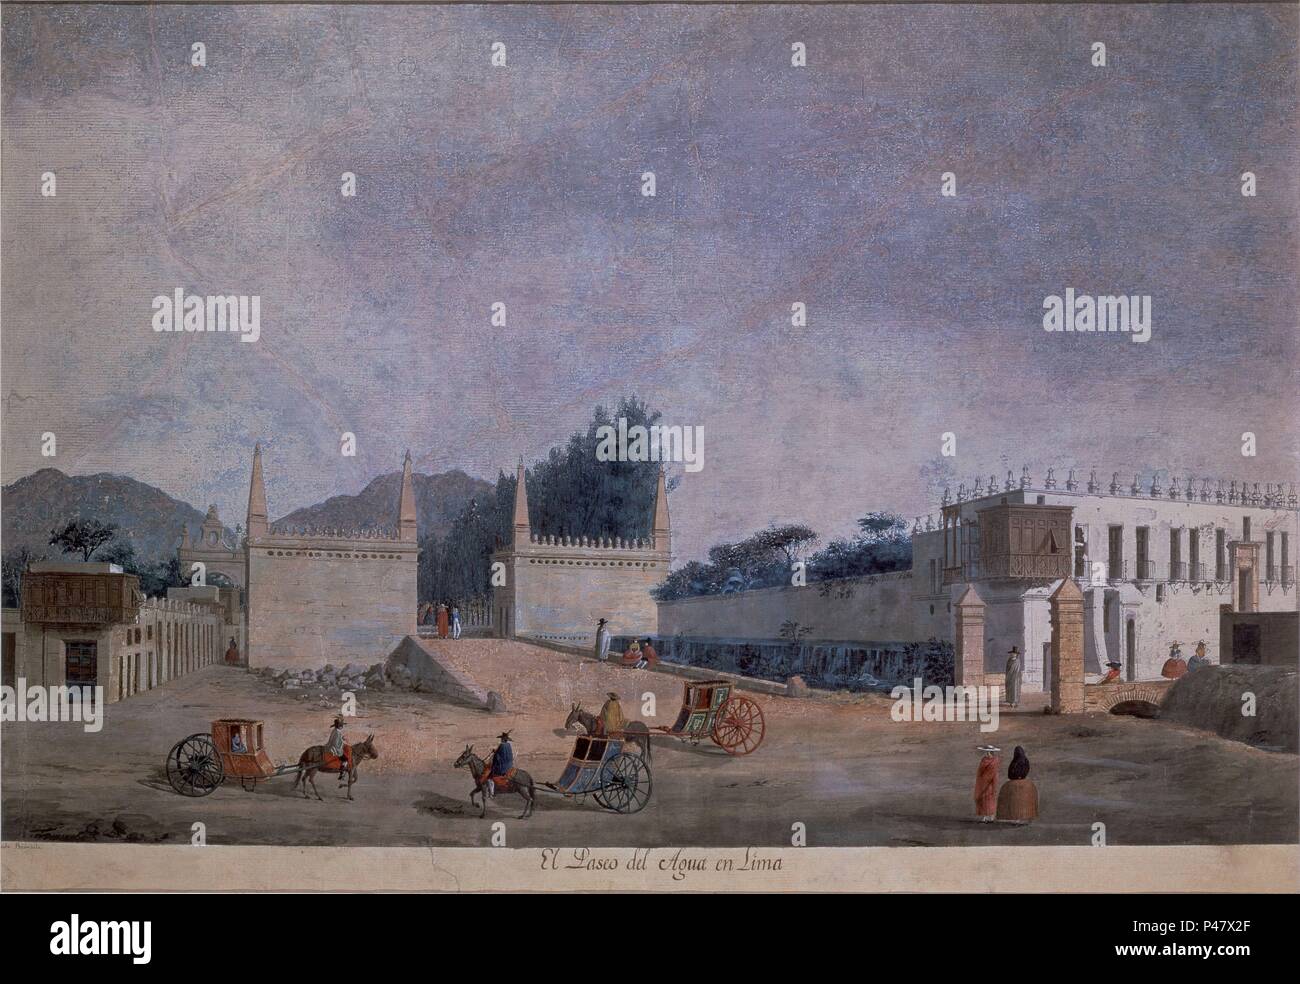 PASEO DEL AGUA EN LIMA - SIGLO XVIII - EXPEDICION MALASPINA. Autore: Fernando Brambila (1763-1832). Posizione: MUSEO NAVAL / MINISTERIO DE MARINA, MADRID, Spagna. Foto Stock